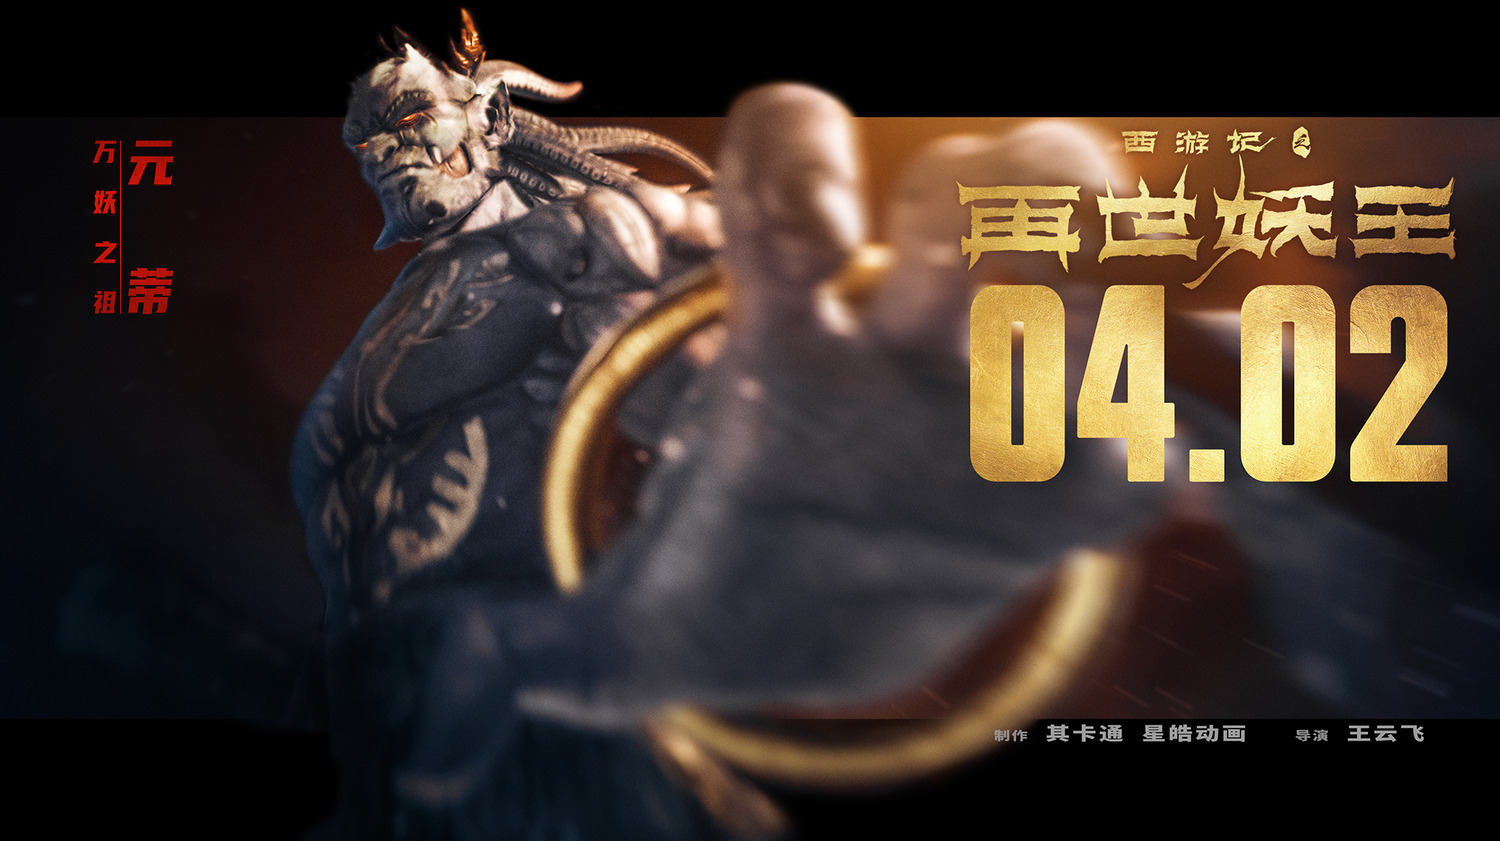 Extra Large Movie Poster Image for Xi You Ji Zhi Zai Shi Yao Wang (#12 of 21)